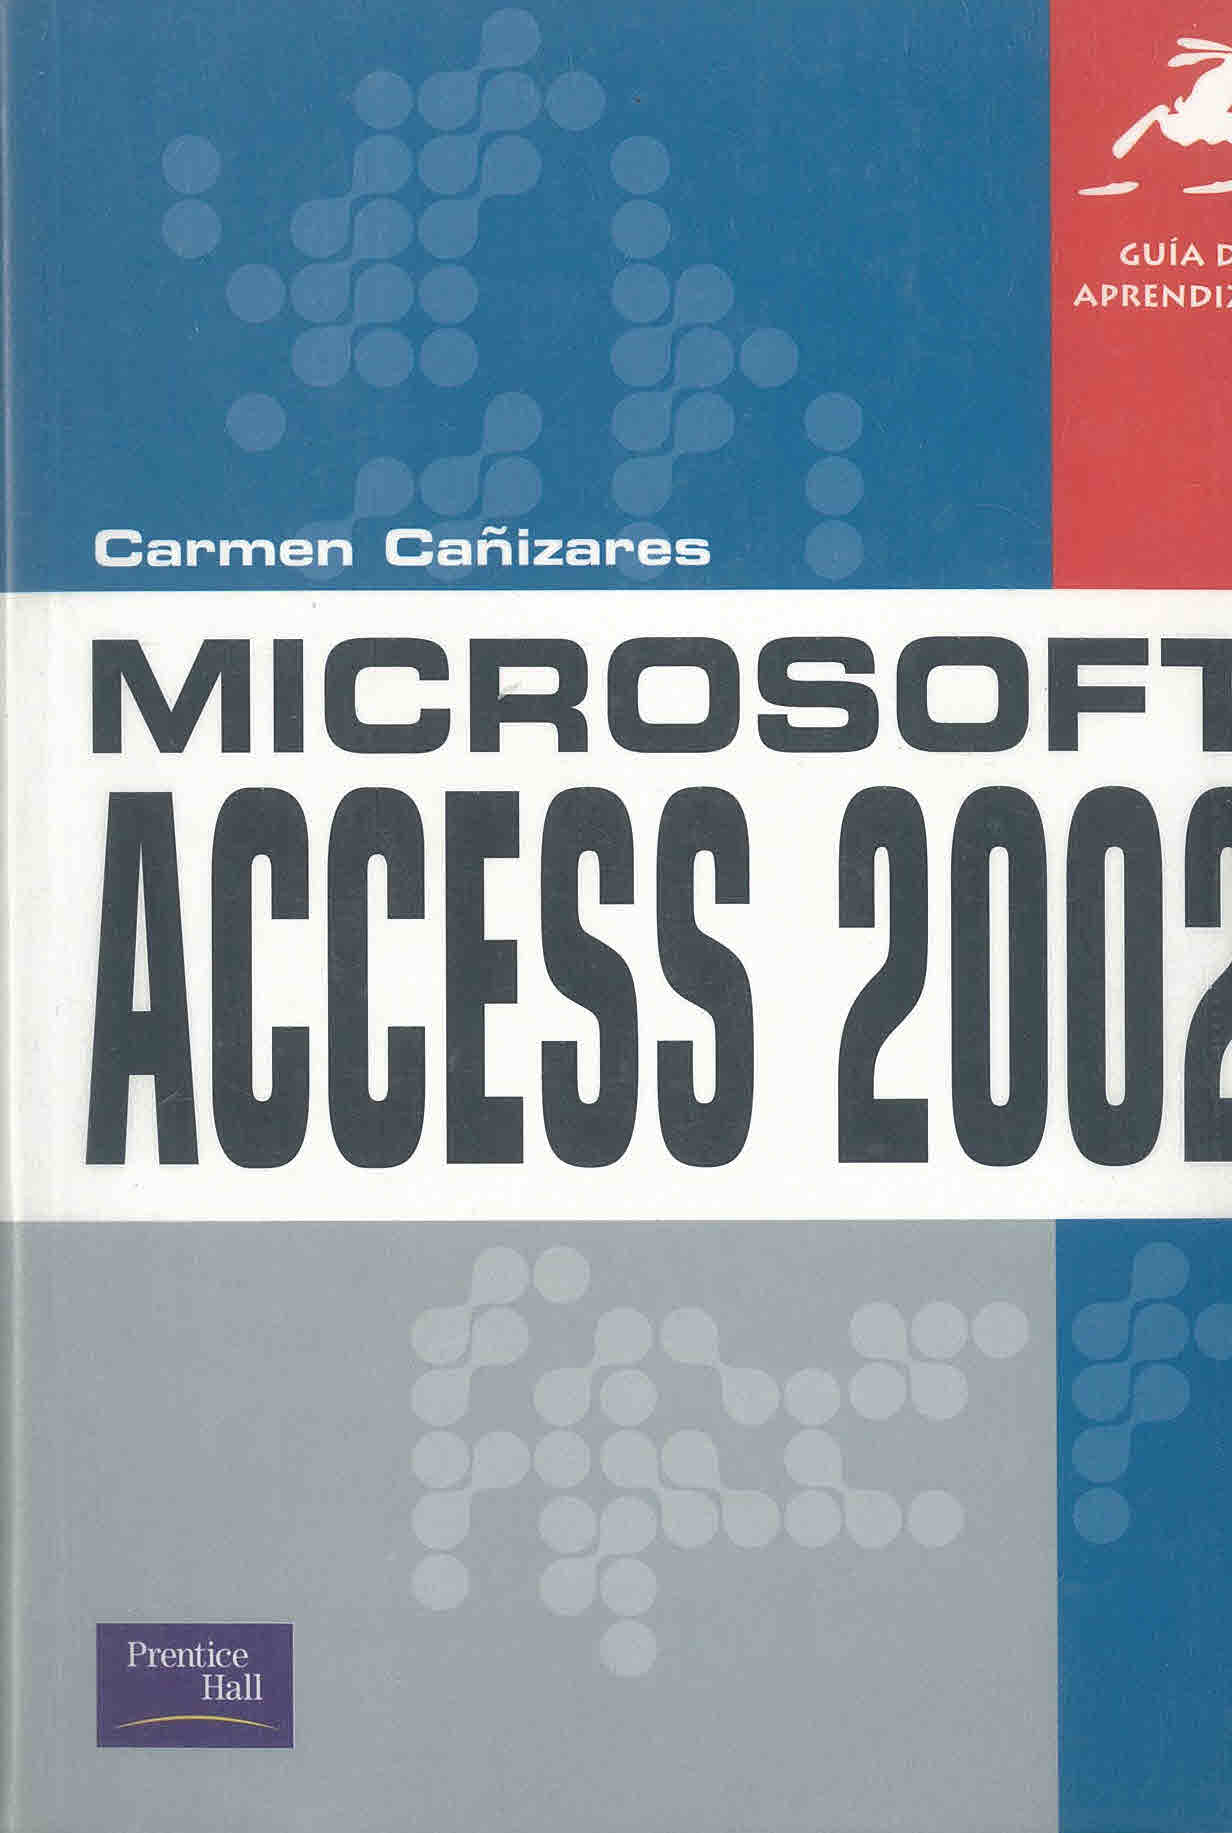 Guía de aprendizaje Microsoft access 2002